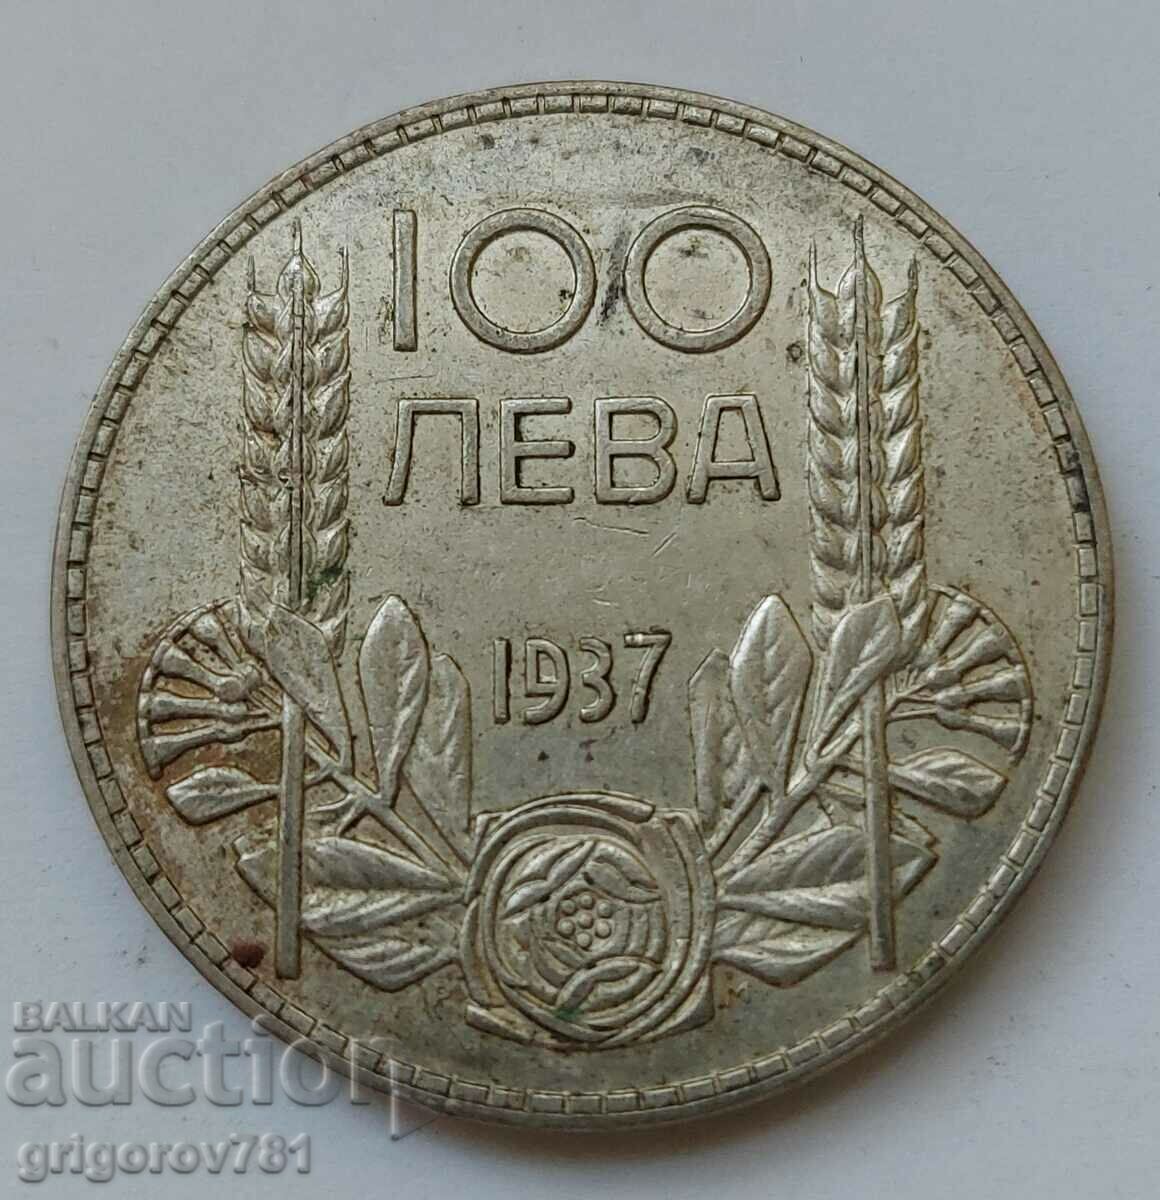 Ασήμι 100 λέβα Βουλγαρία 1937 - ασημένιο νόμισμα #112